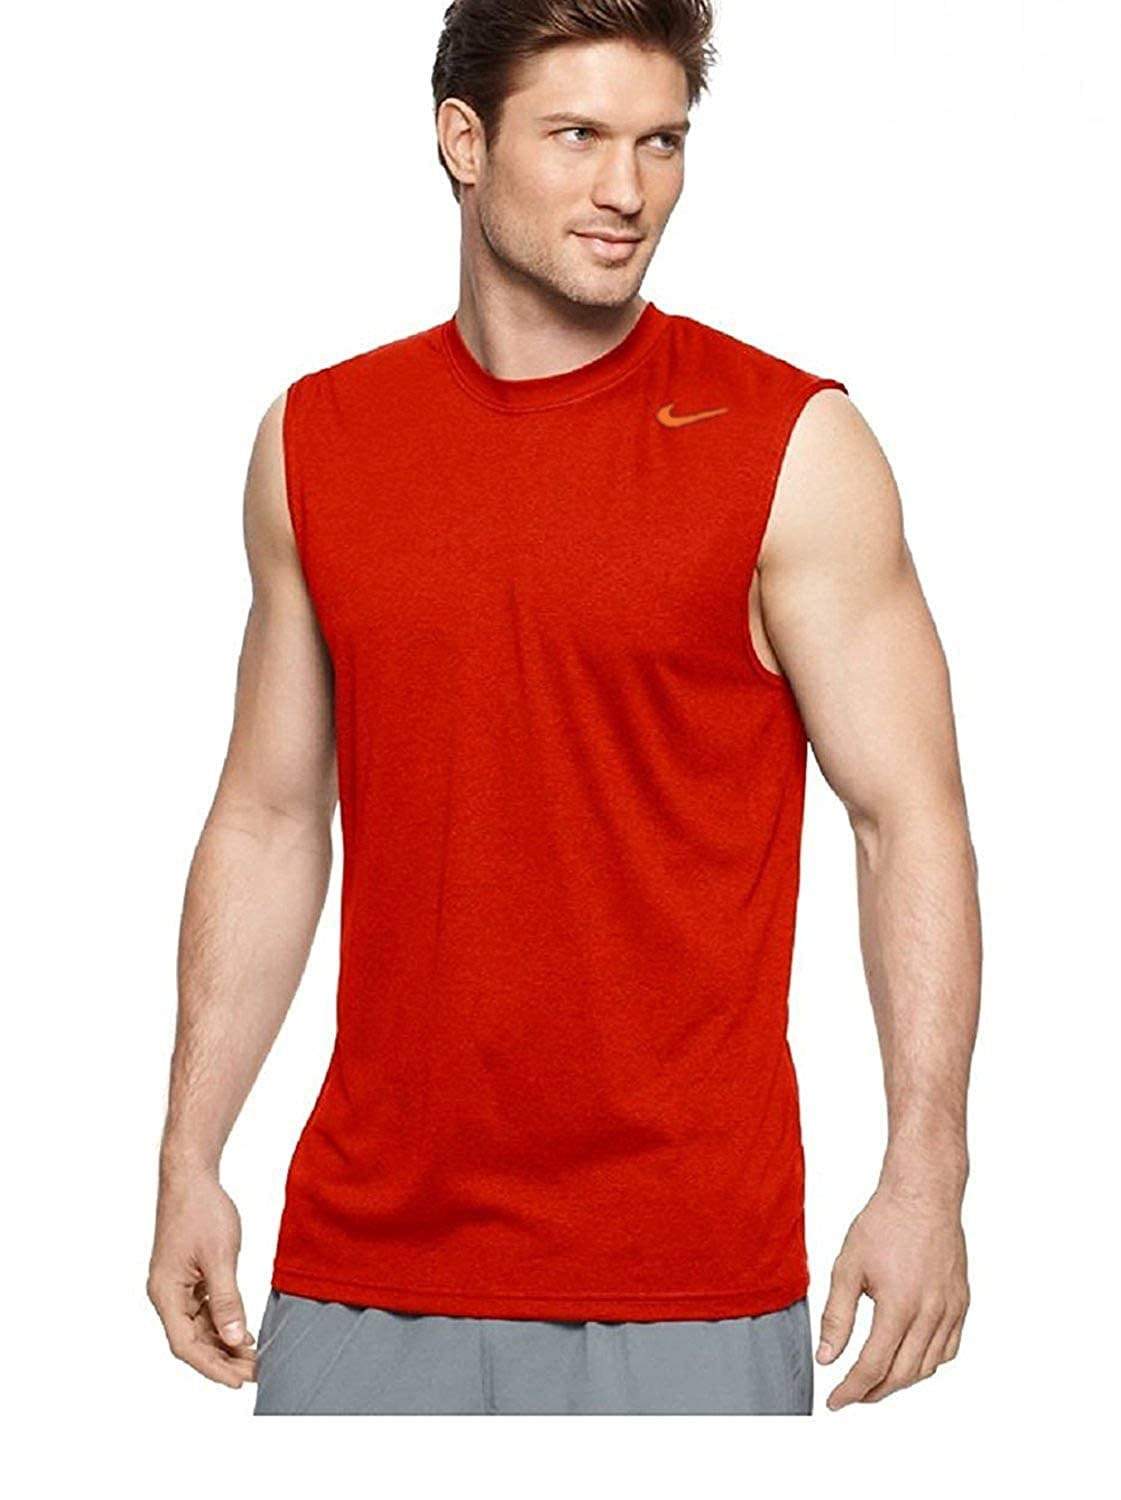 Nike Mens sports Legend Dri-Fit Sleeveless T Shirt